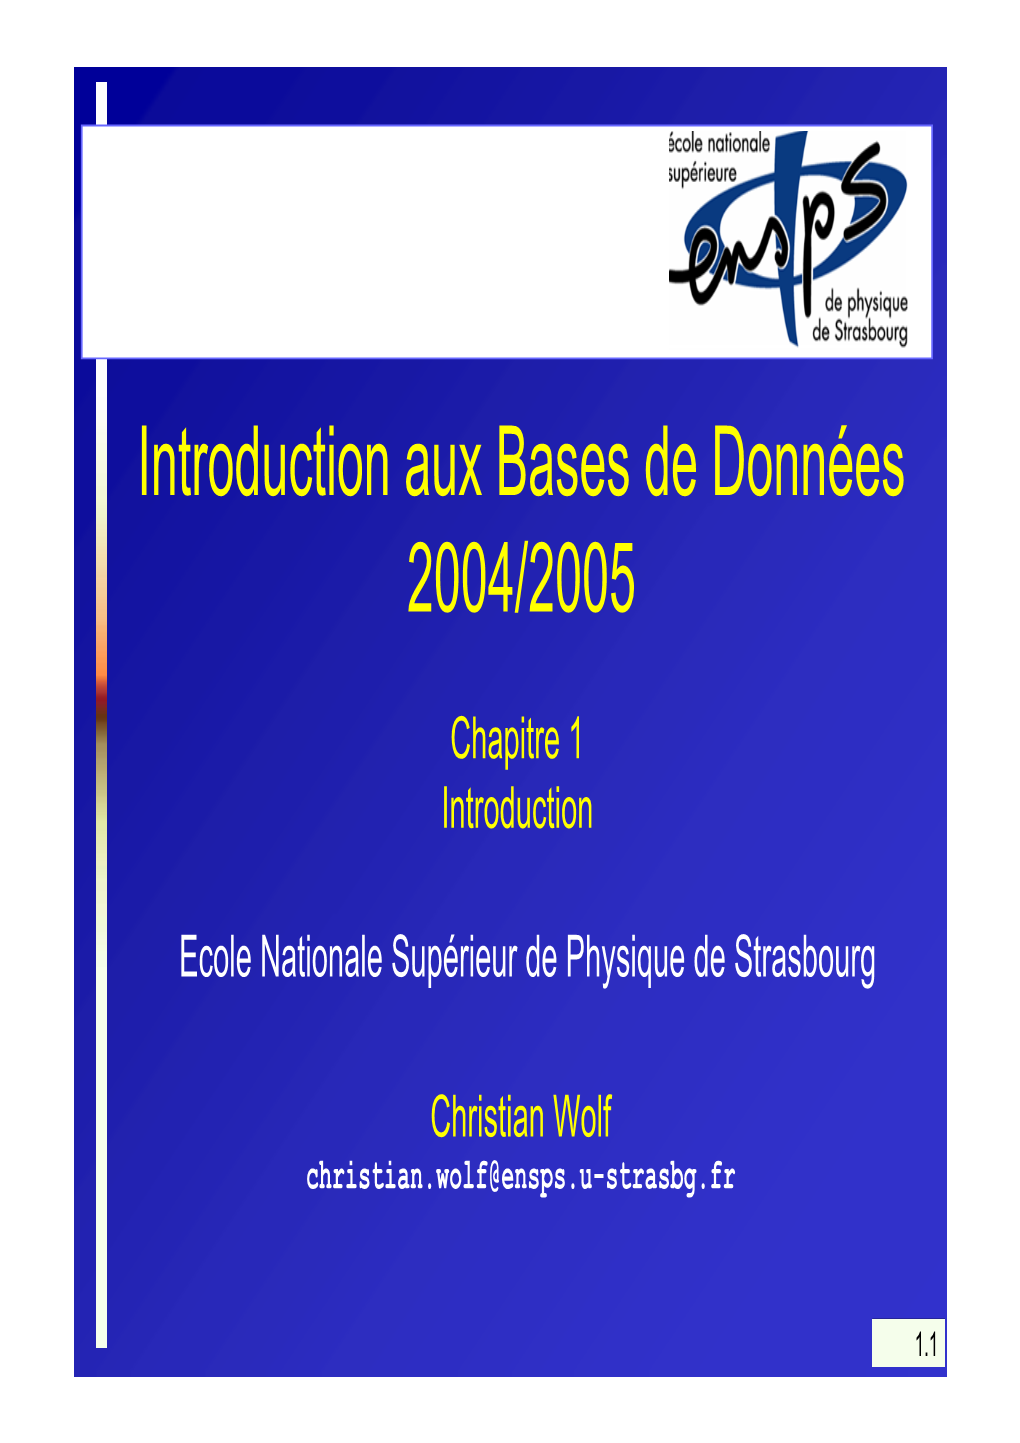 Introduction Aux Bases De Données 2004/2005